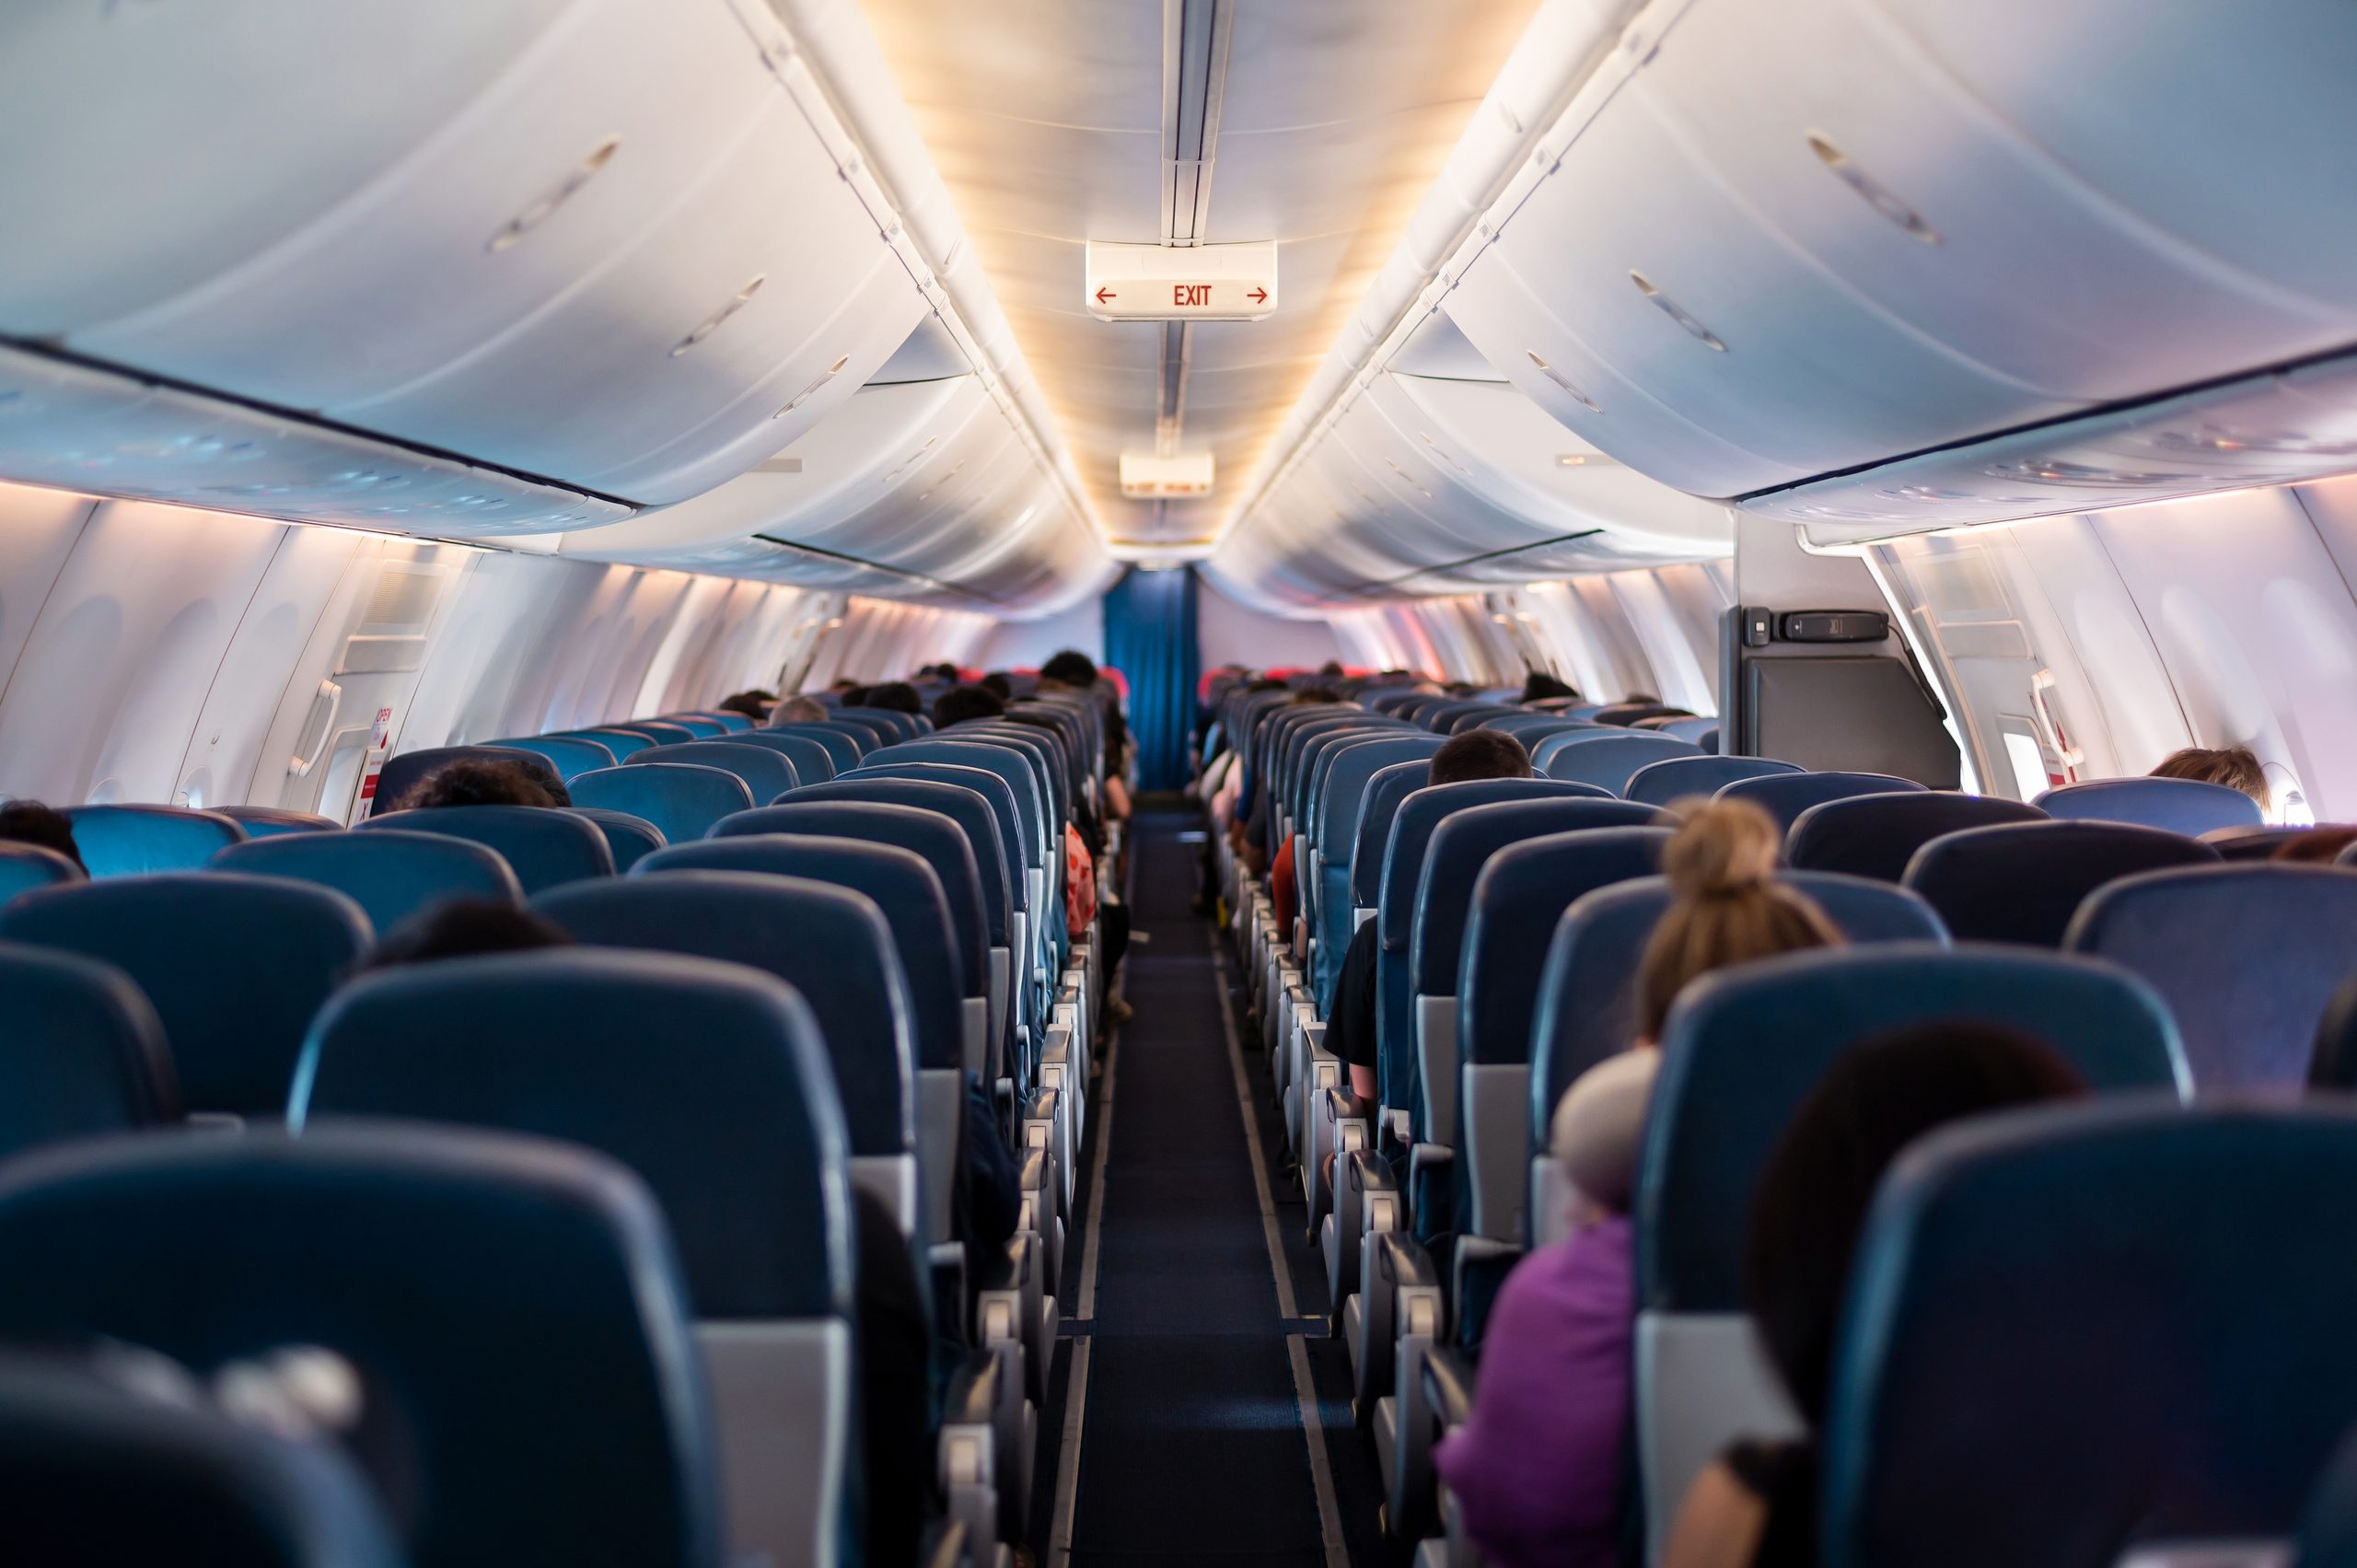 Turbulenzen im Flugzeug: 5 hilfreiche Tipps!